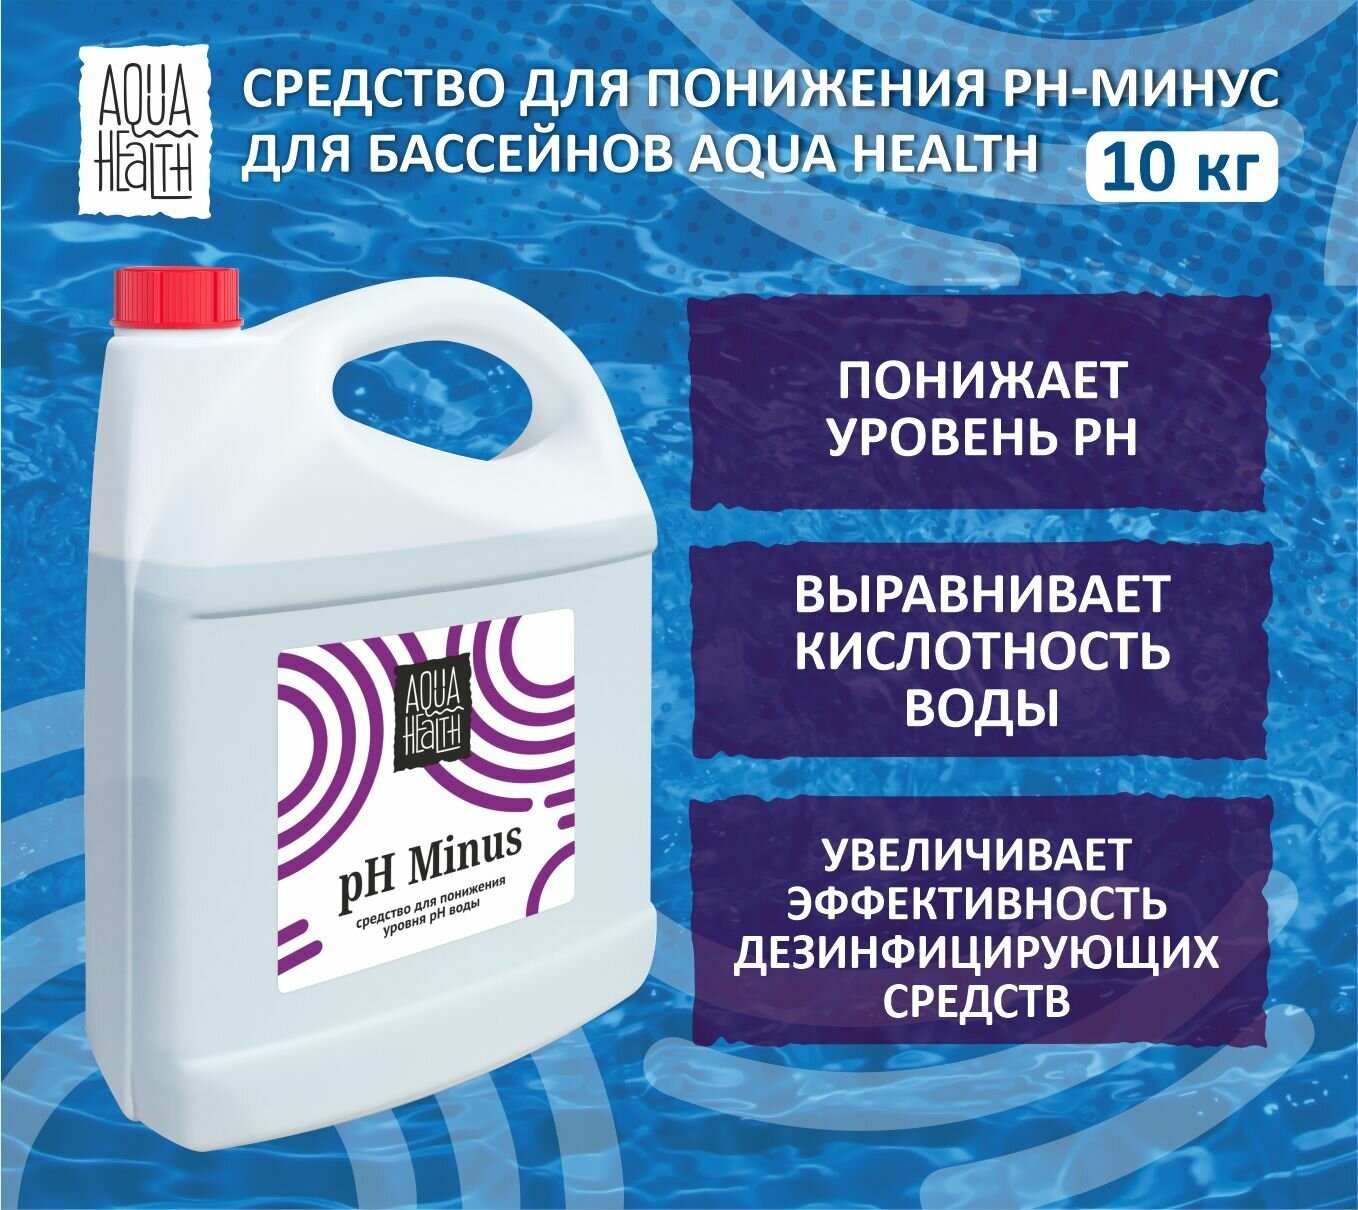 Средство понижения pH для бассейнов Aqua Health pH MINUS 10кг